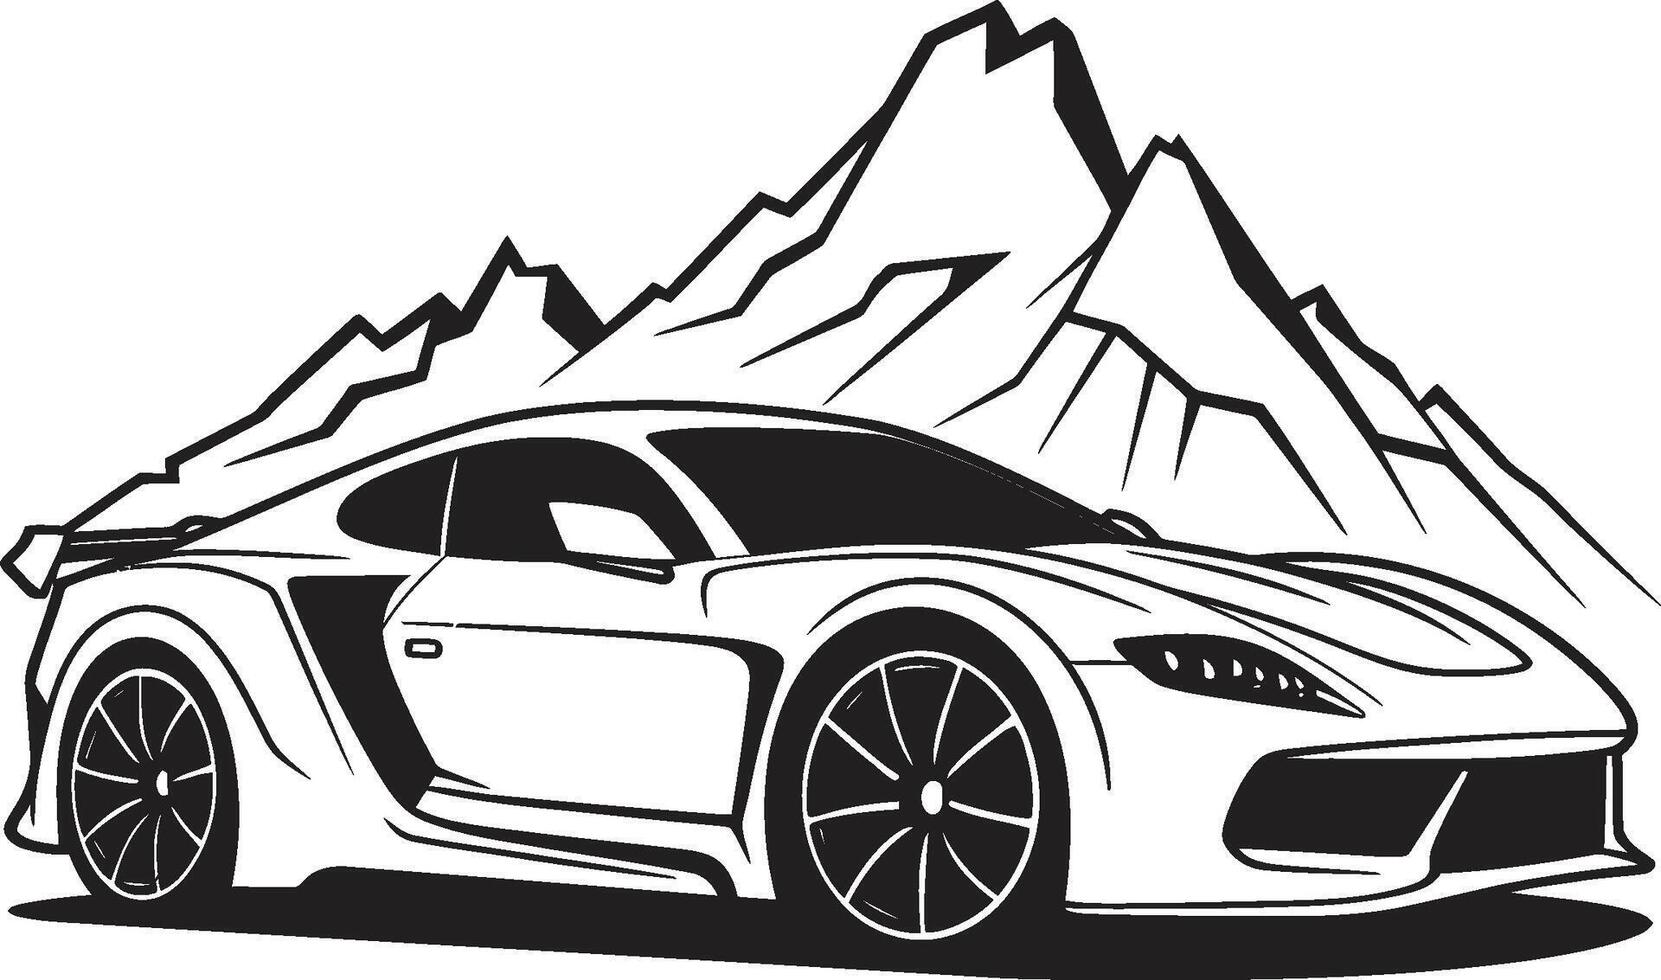 högland horisont ikoniska vektor symbol av en sporter bil erövrande svart berg vägar topp synkronisering svart logotyp design med en sporter bil ikon i harmoni med berg spår